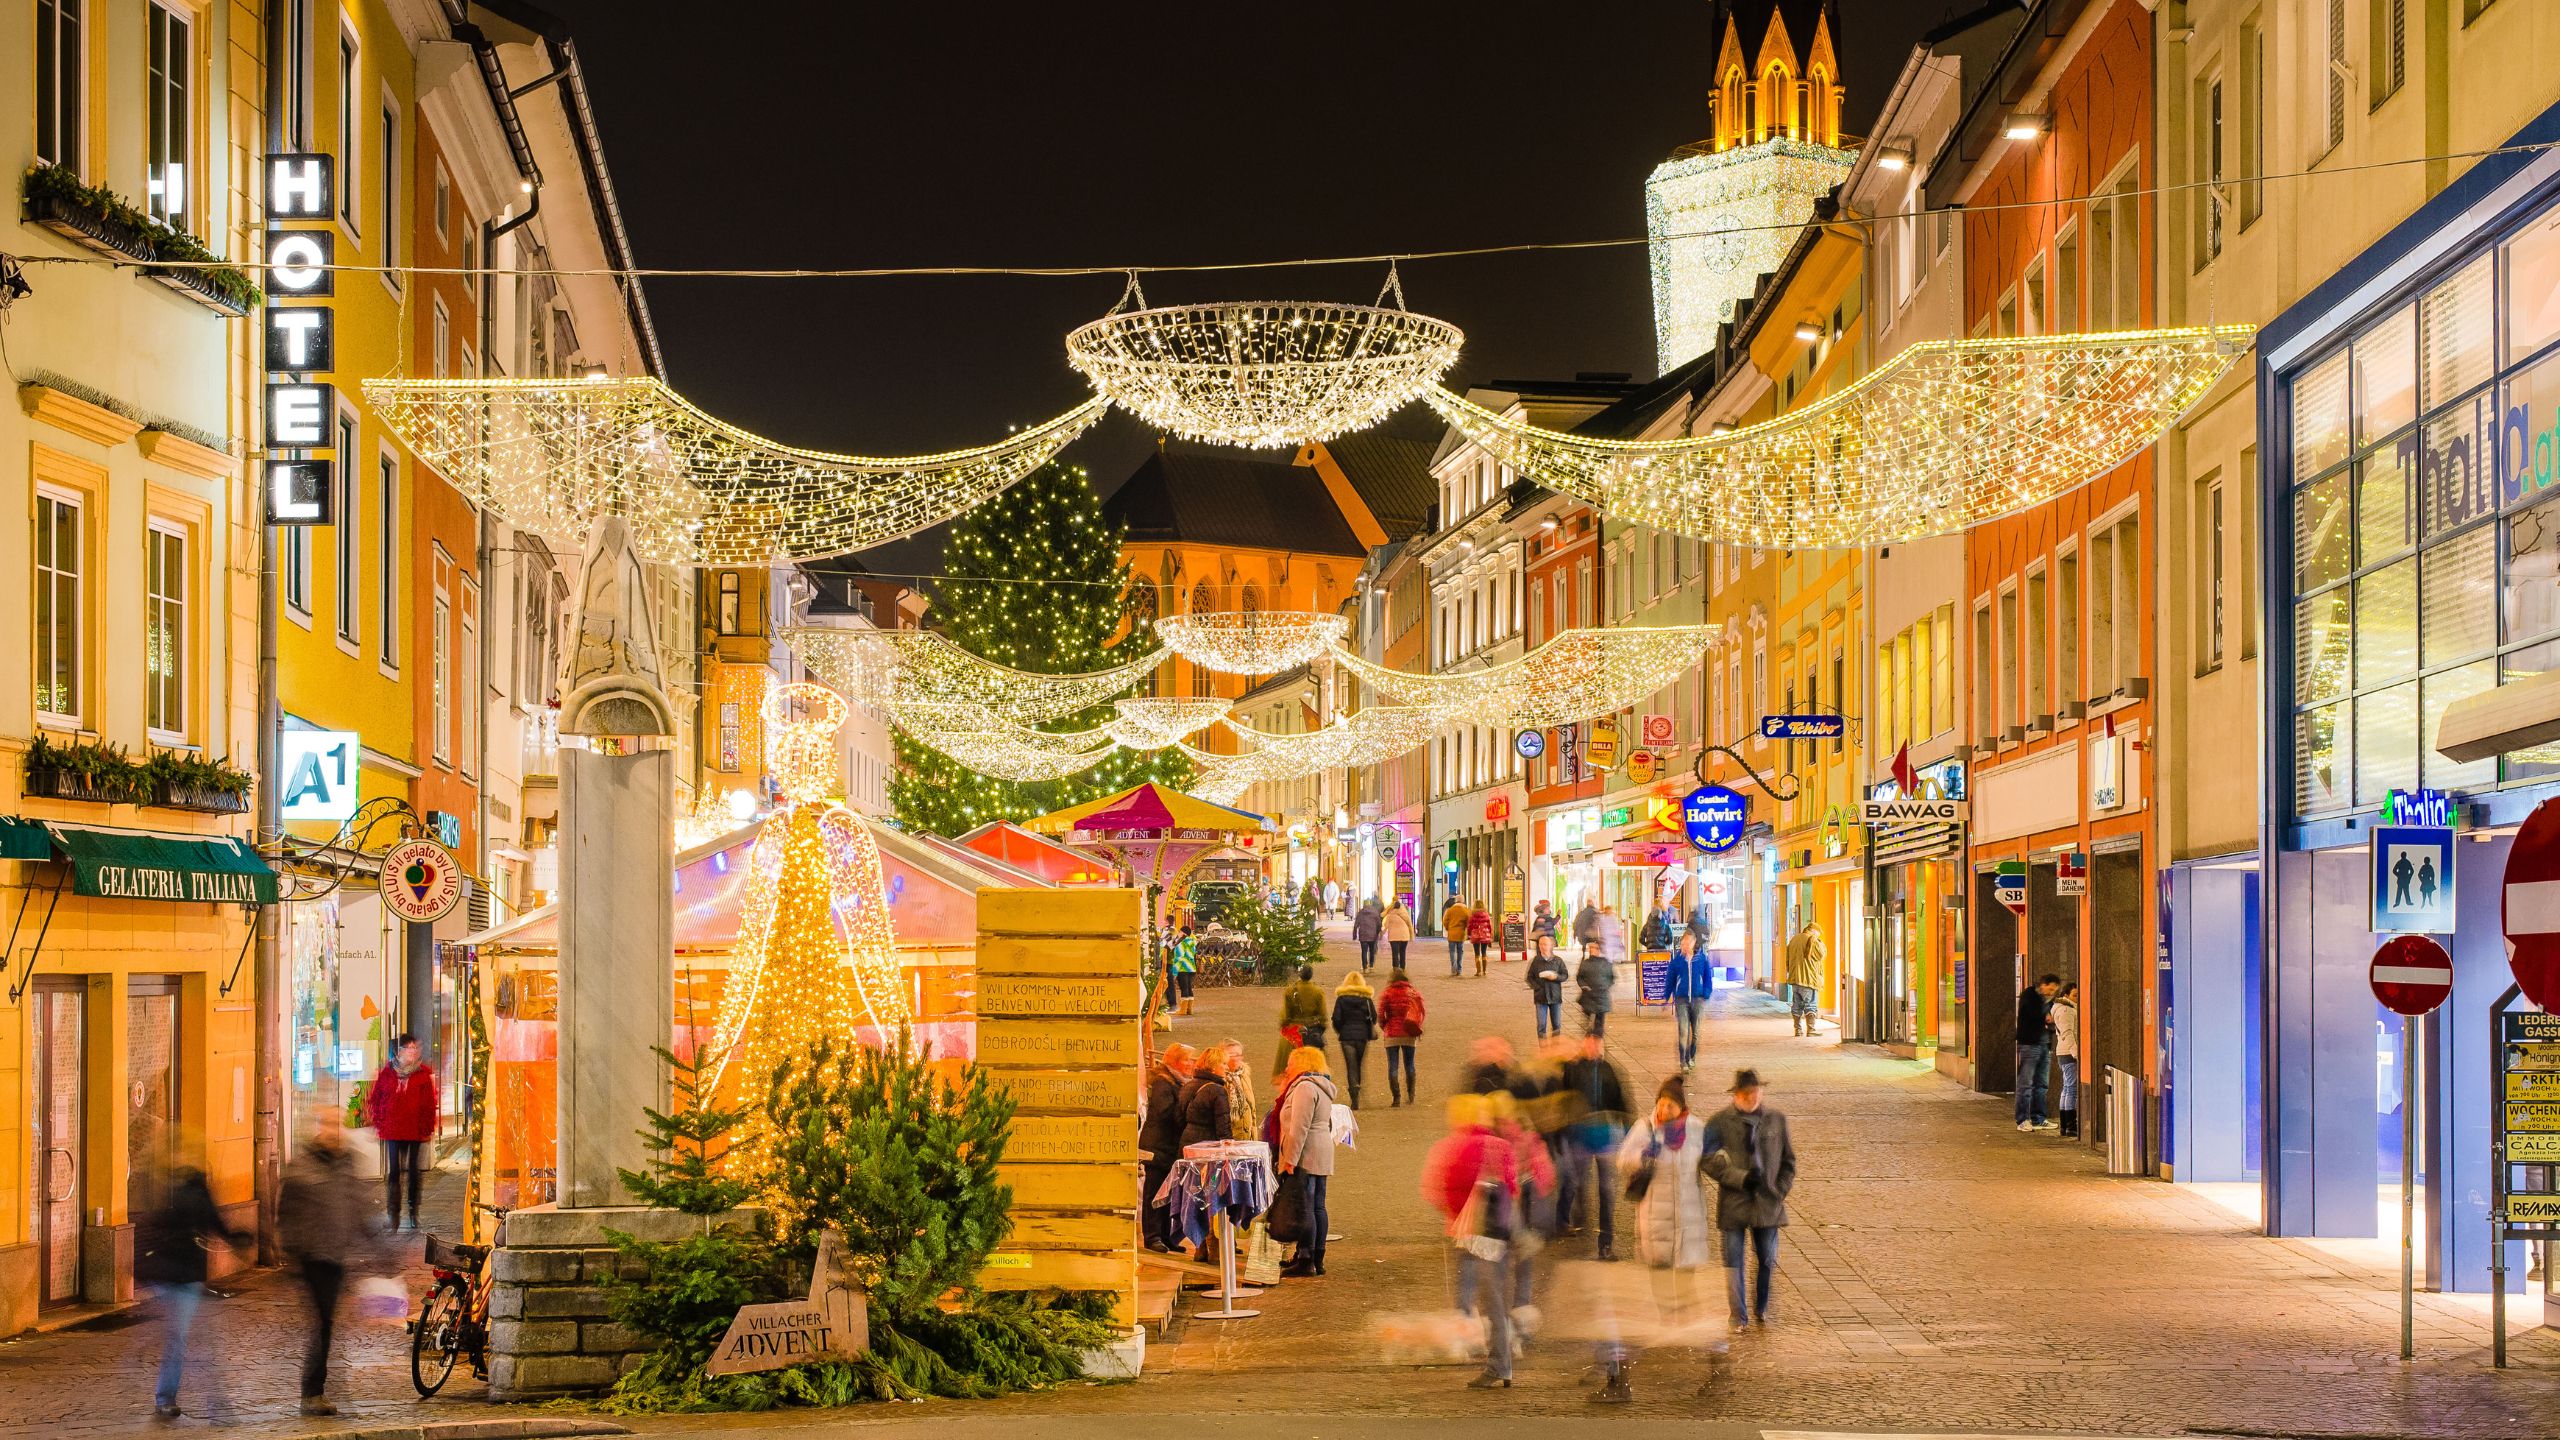 Villacher Innenstadt mit Weihnachtsbeleuchtung und festlich dekorierten Hütten